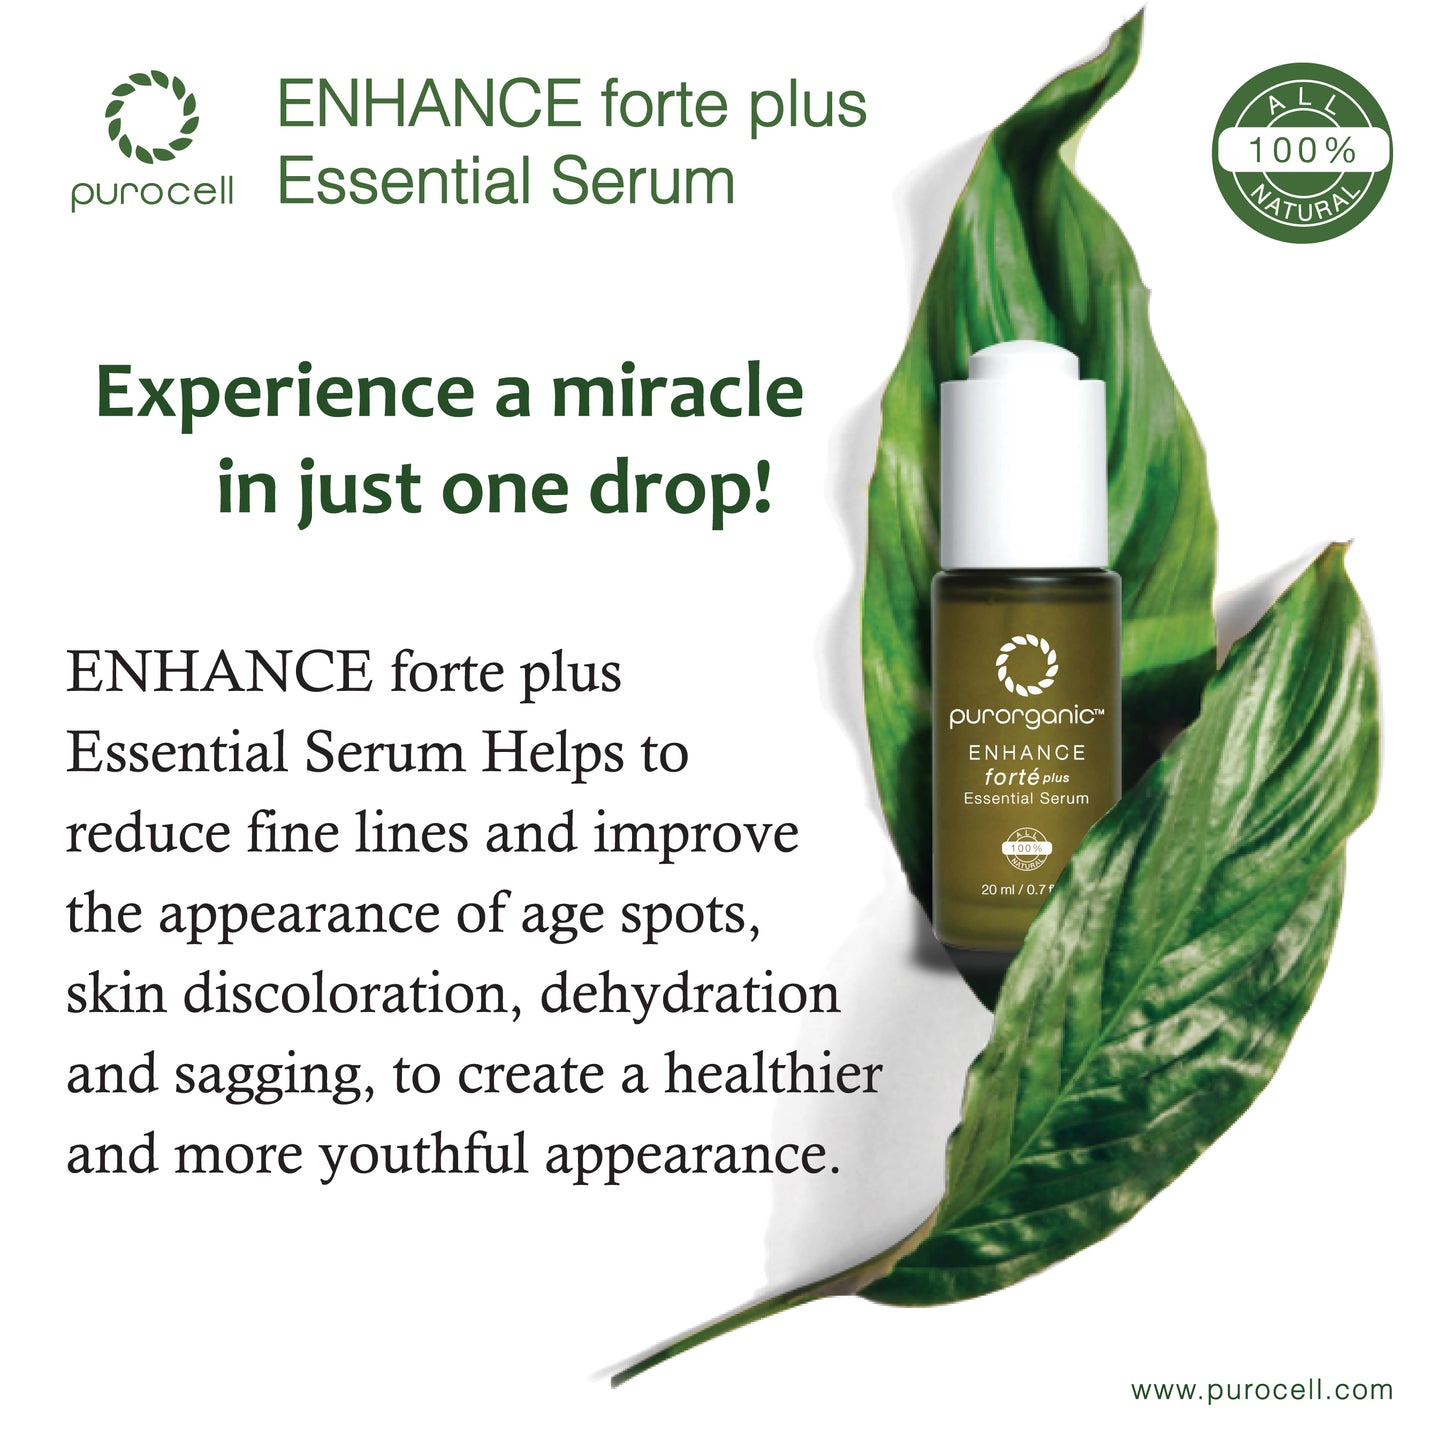 ENHANCE Forte Plus Essential Serum